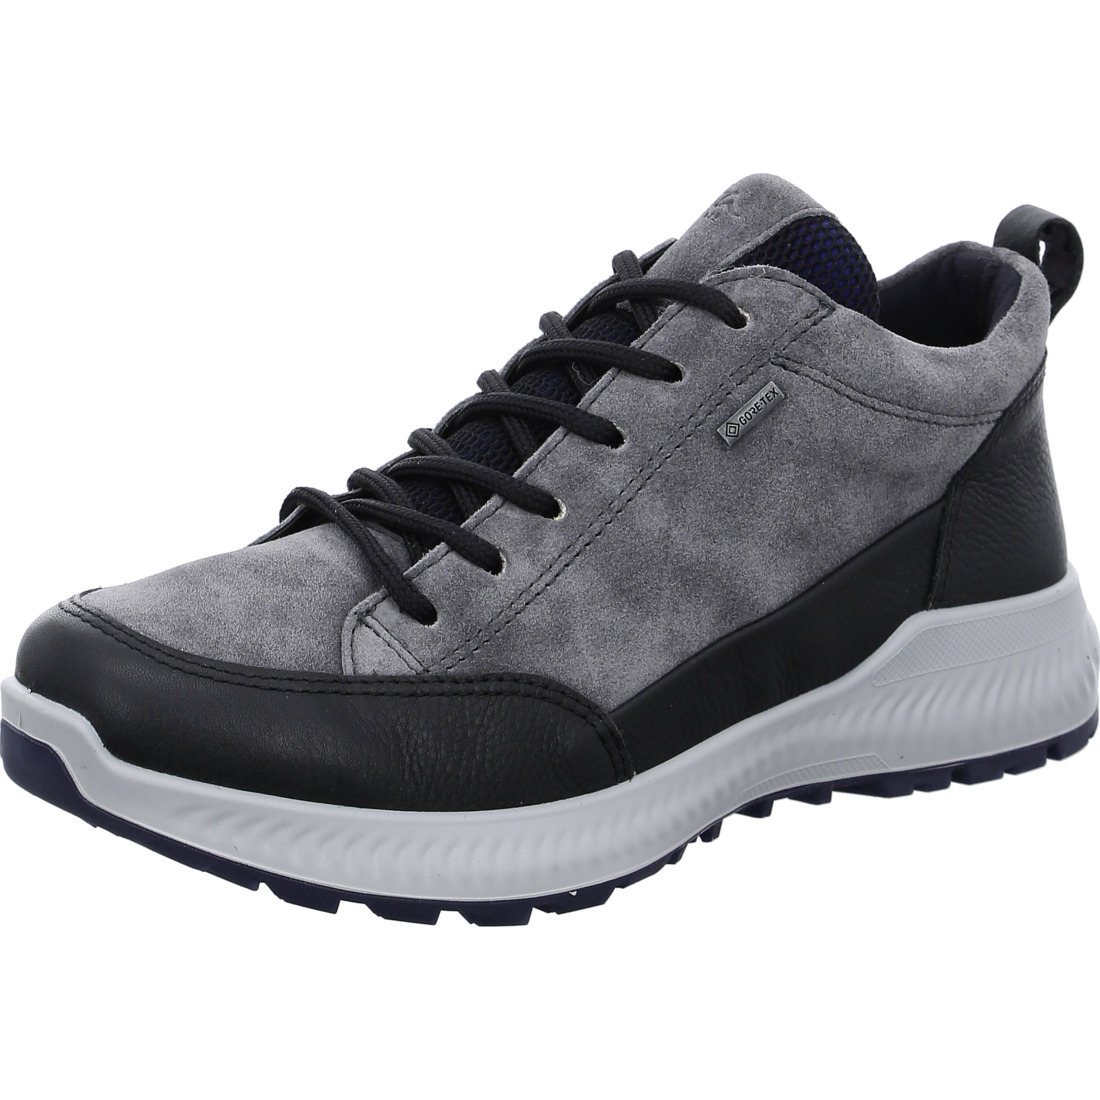 Doublure chaude*Ara Shoes Doublure chaude Bottines Hiker noir graphite